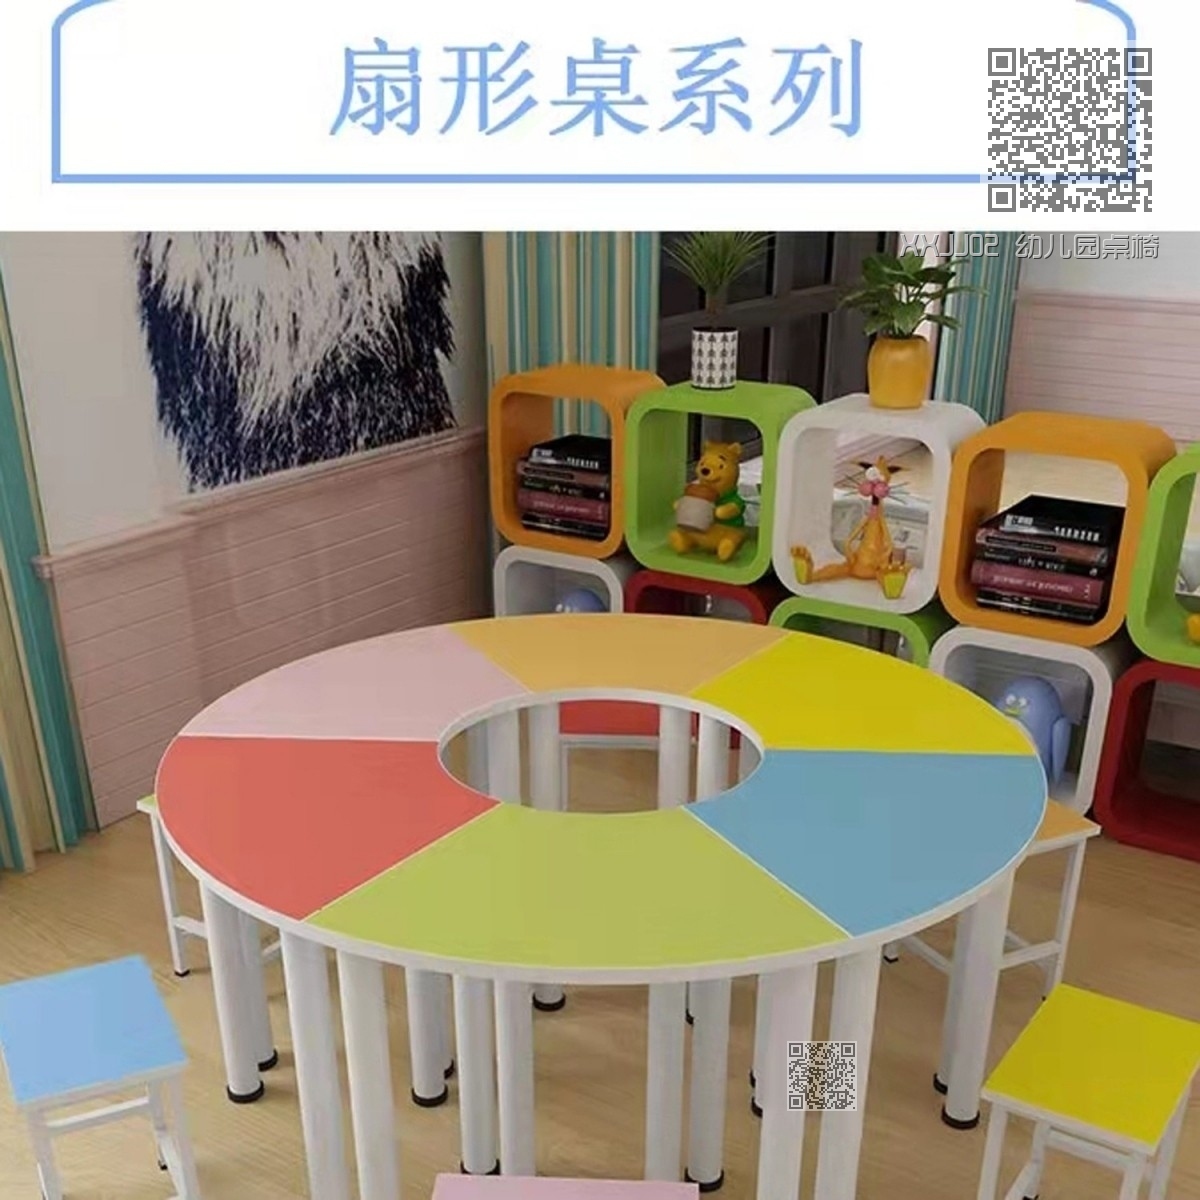 XXJJ02 幼儿园桌椅